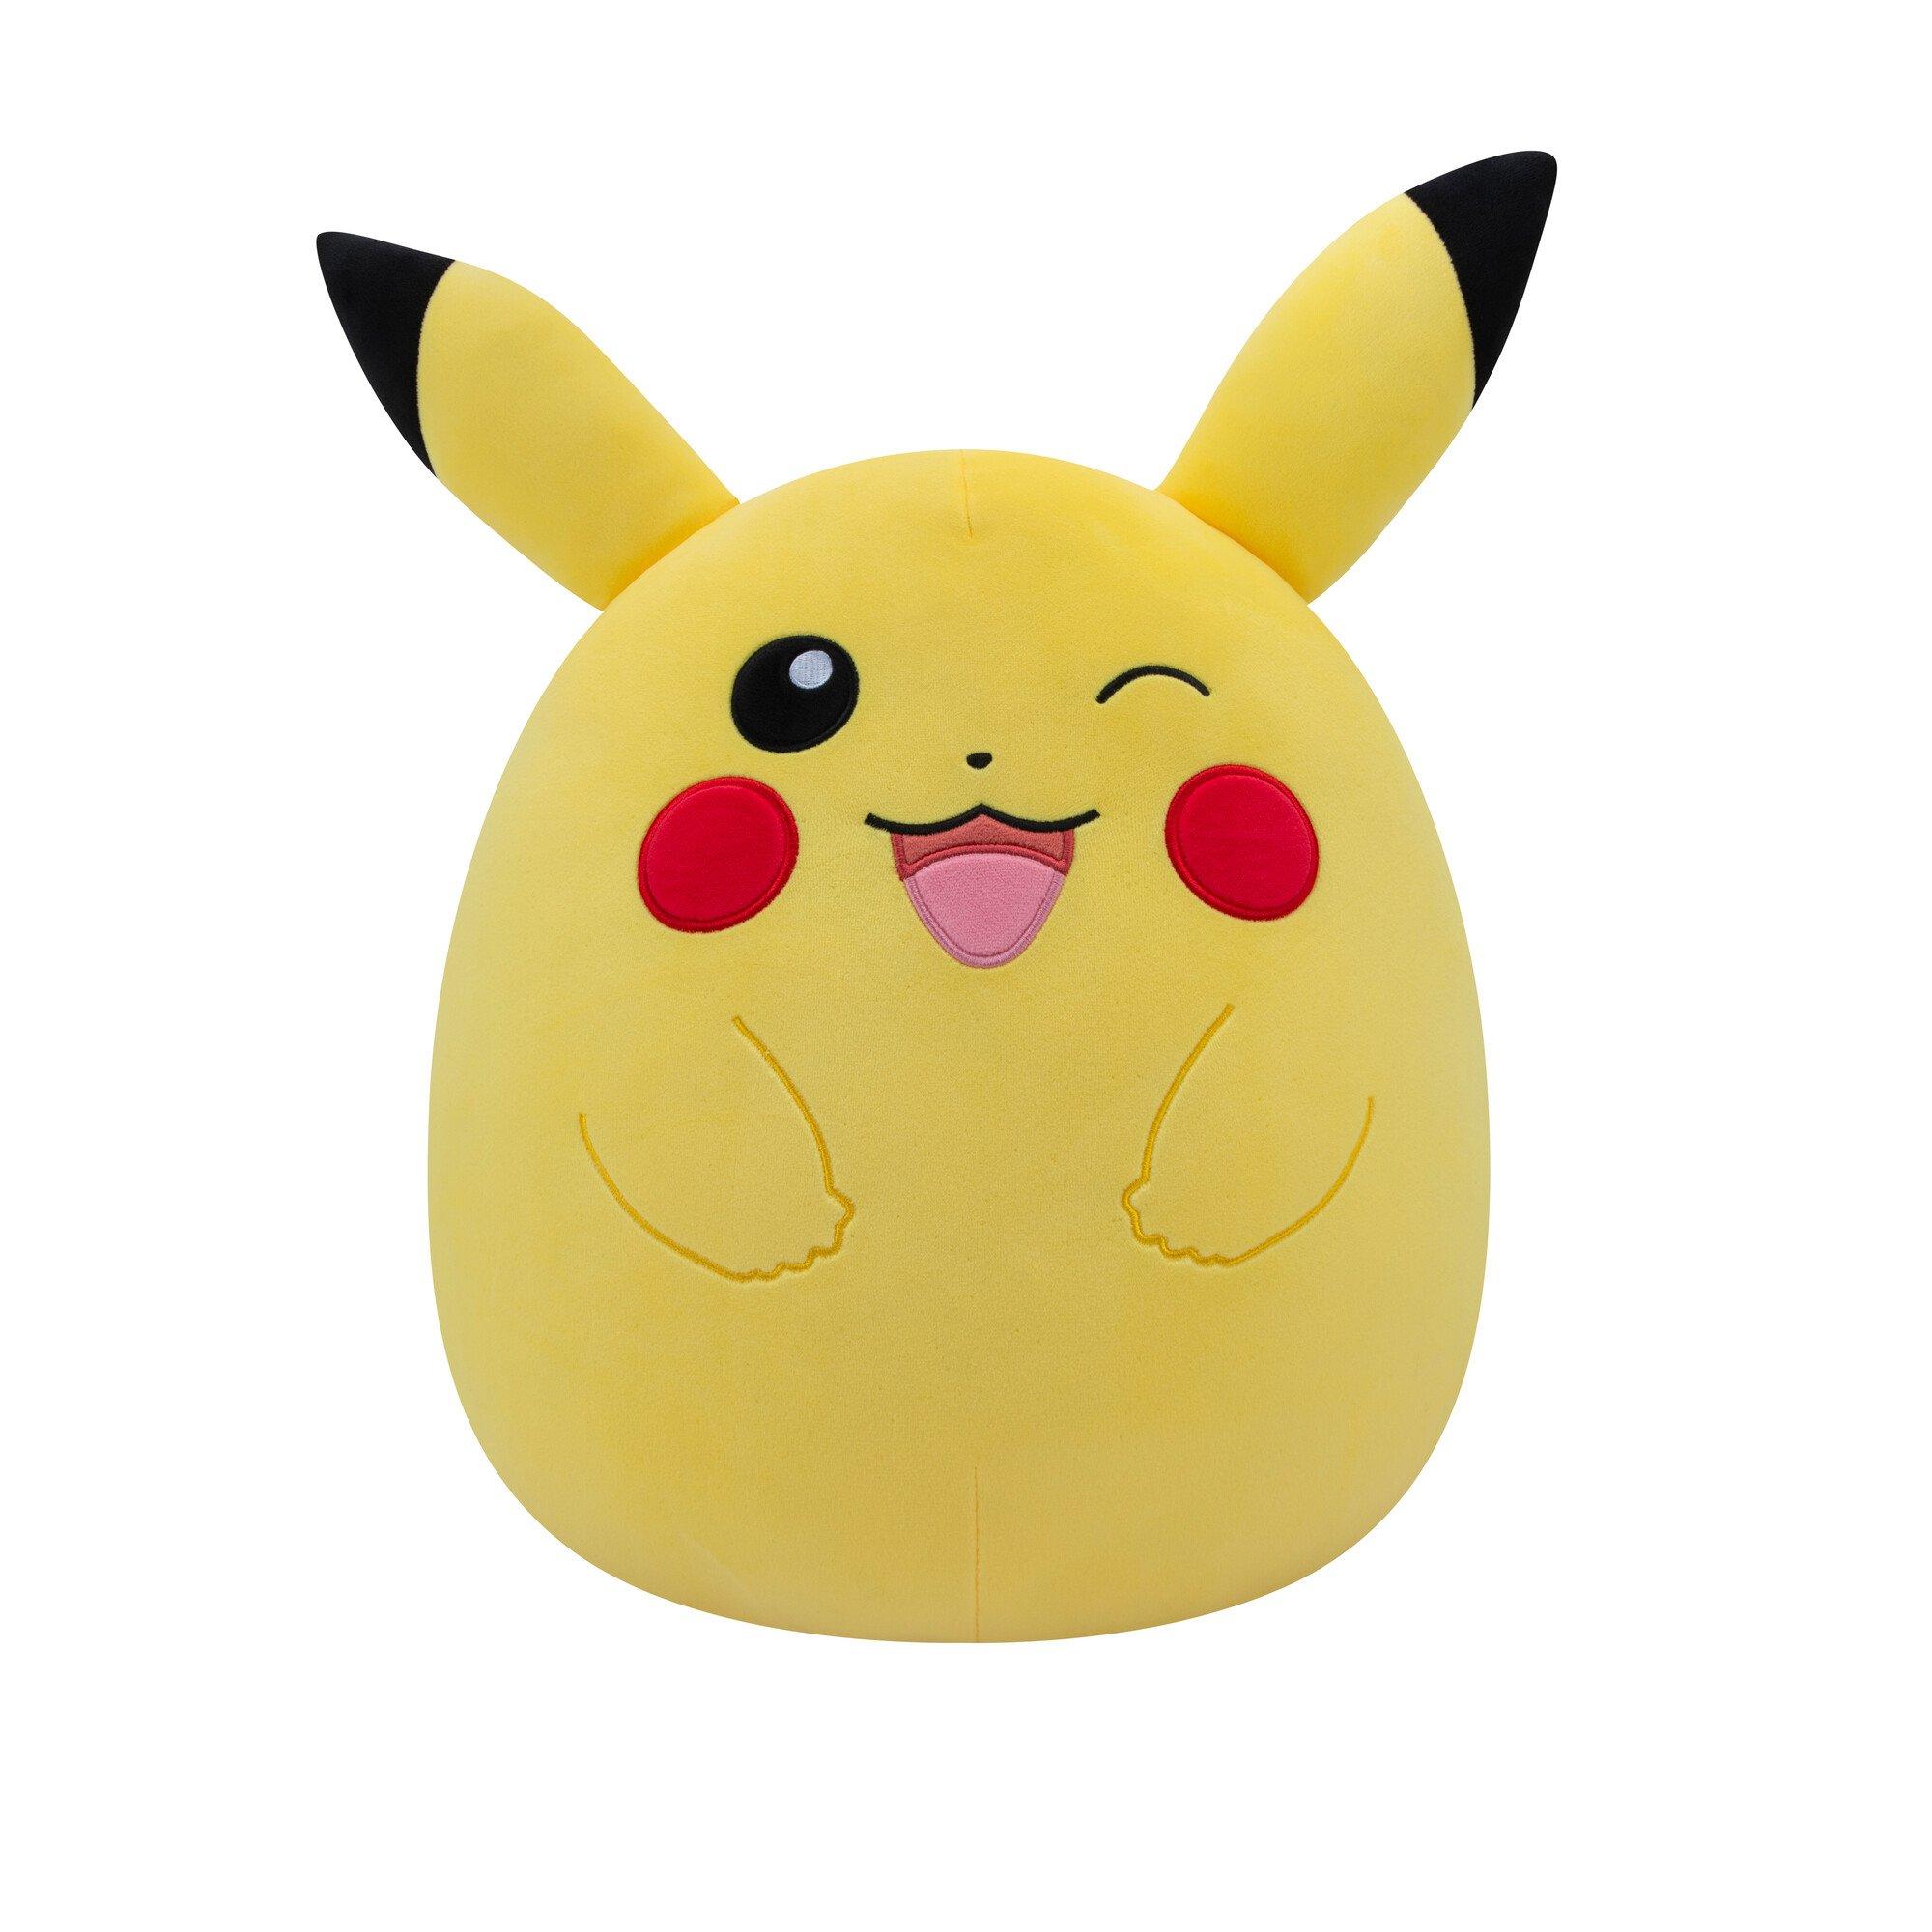 Pokémon - Peluche Pikachu en velour côtelé - 20 cm